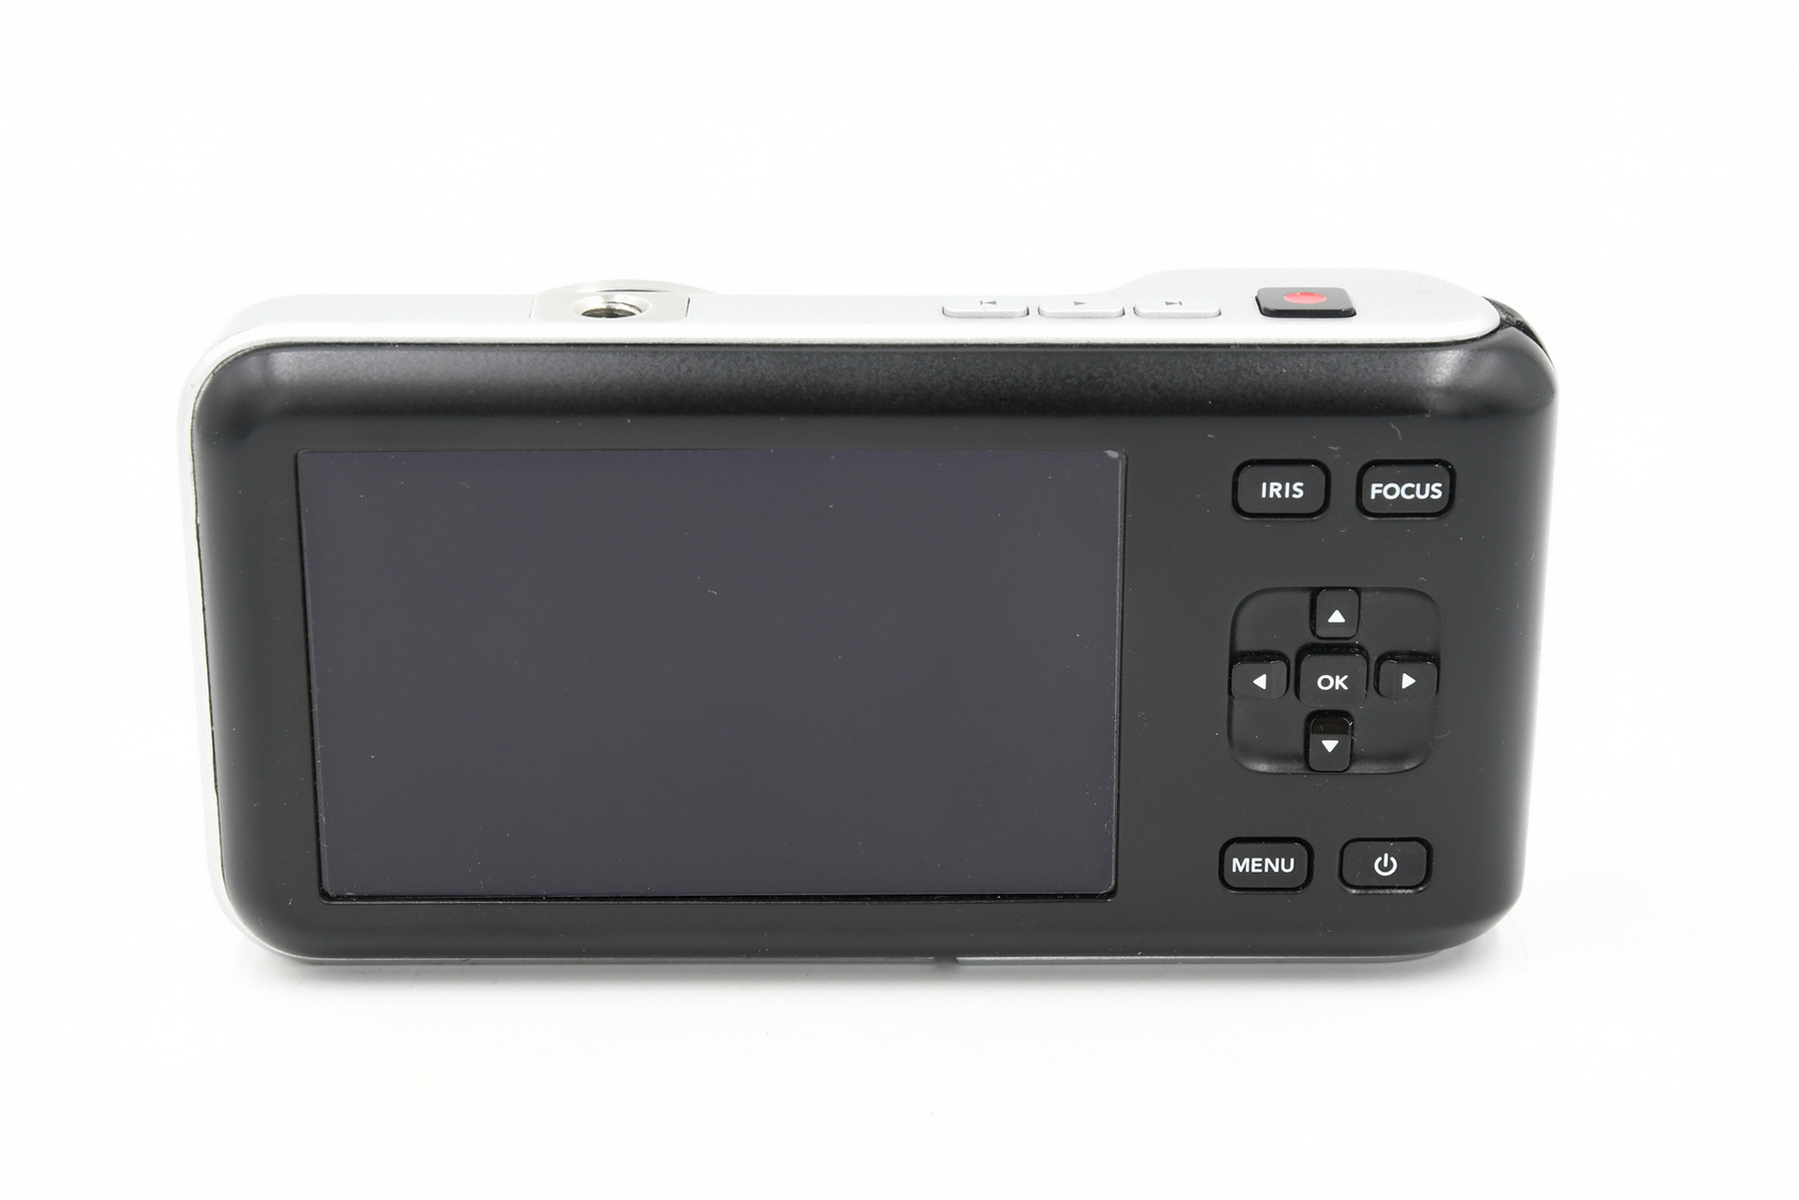 Видеокамера Blackmagic Pocket Cinema Camera + SD 128 GB + З/У (состояние 5) от Яркий Фотомаркет